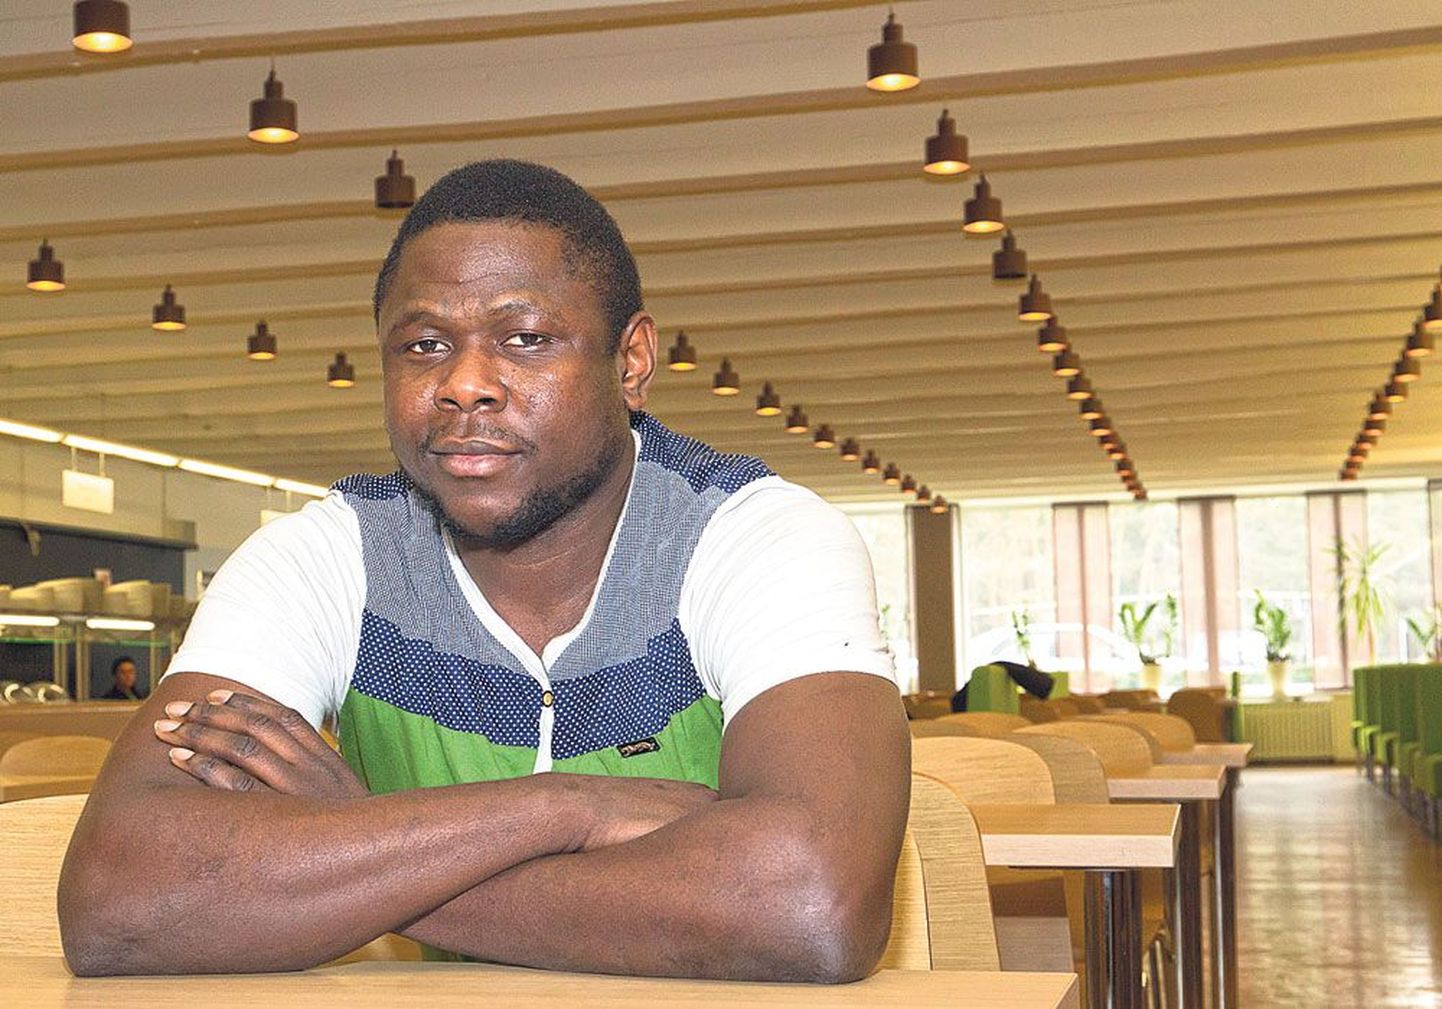 После окончания докторантуры Таллиннского технического университета нигериец Годсвилл Чимези Нквуси хотел бы работать преподавателем в Эстонии, Нигерии или иной стране.